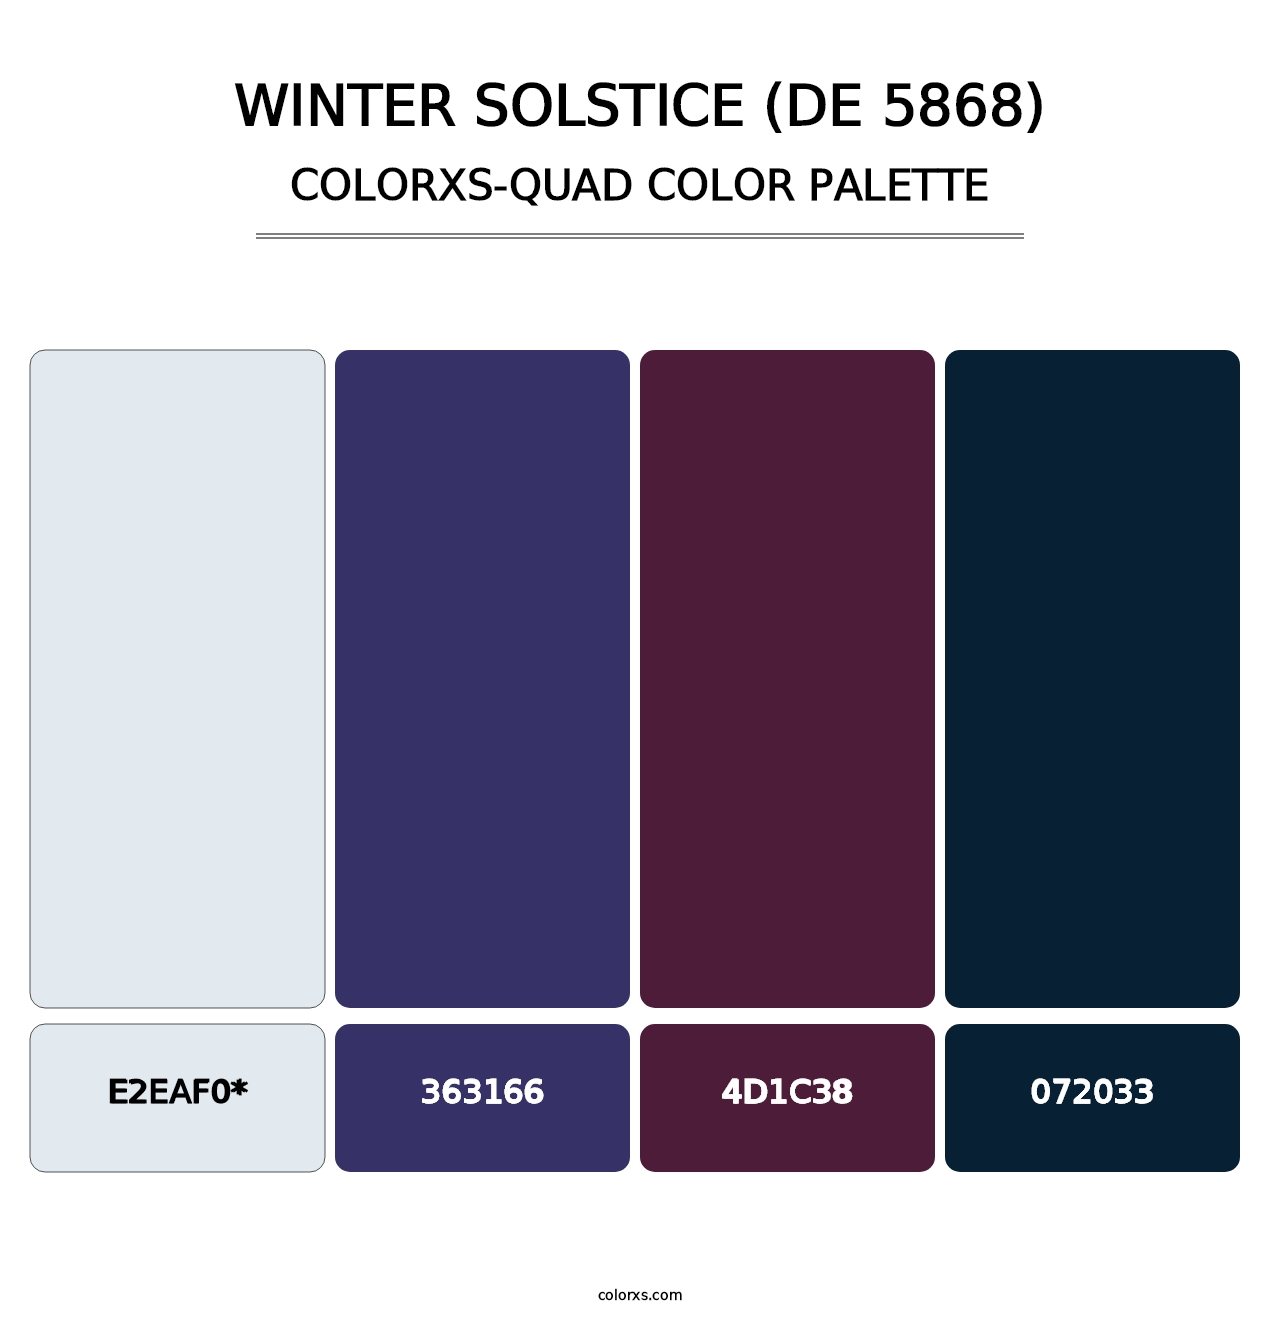 Winter Solstice (DE 5868) - Colorxs Quad Palette